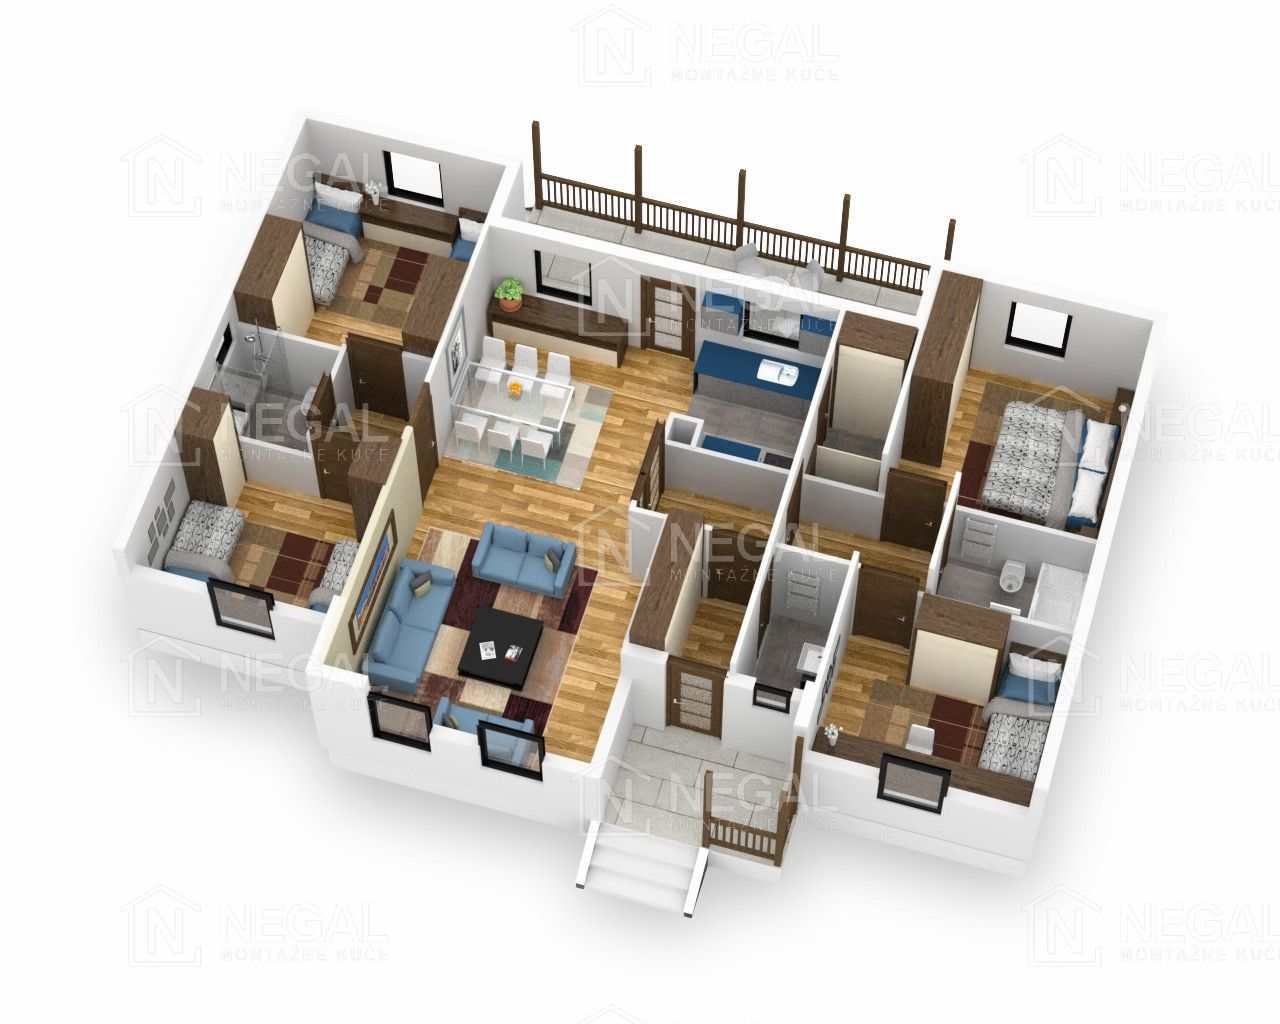 Montažna kuća Klasik Negal Ivanjica | Tip Montažne kuće 135 - 3D plan